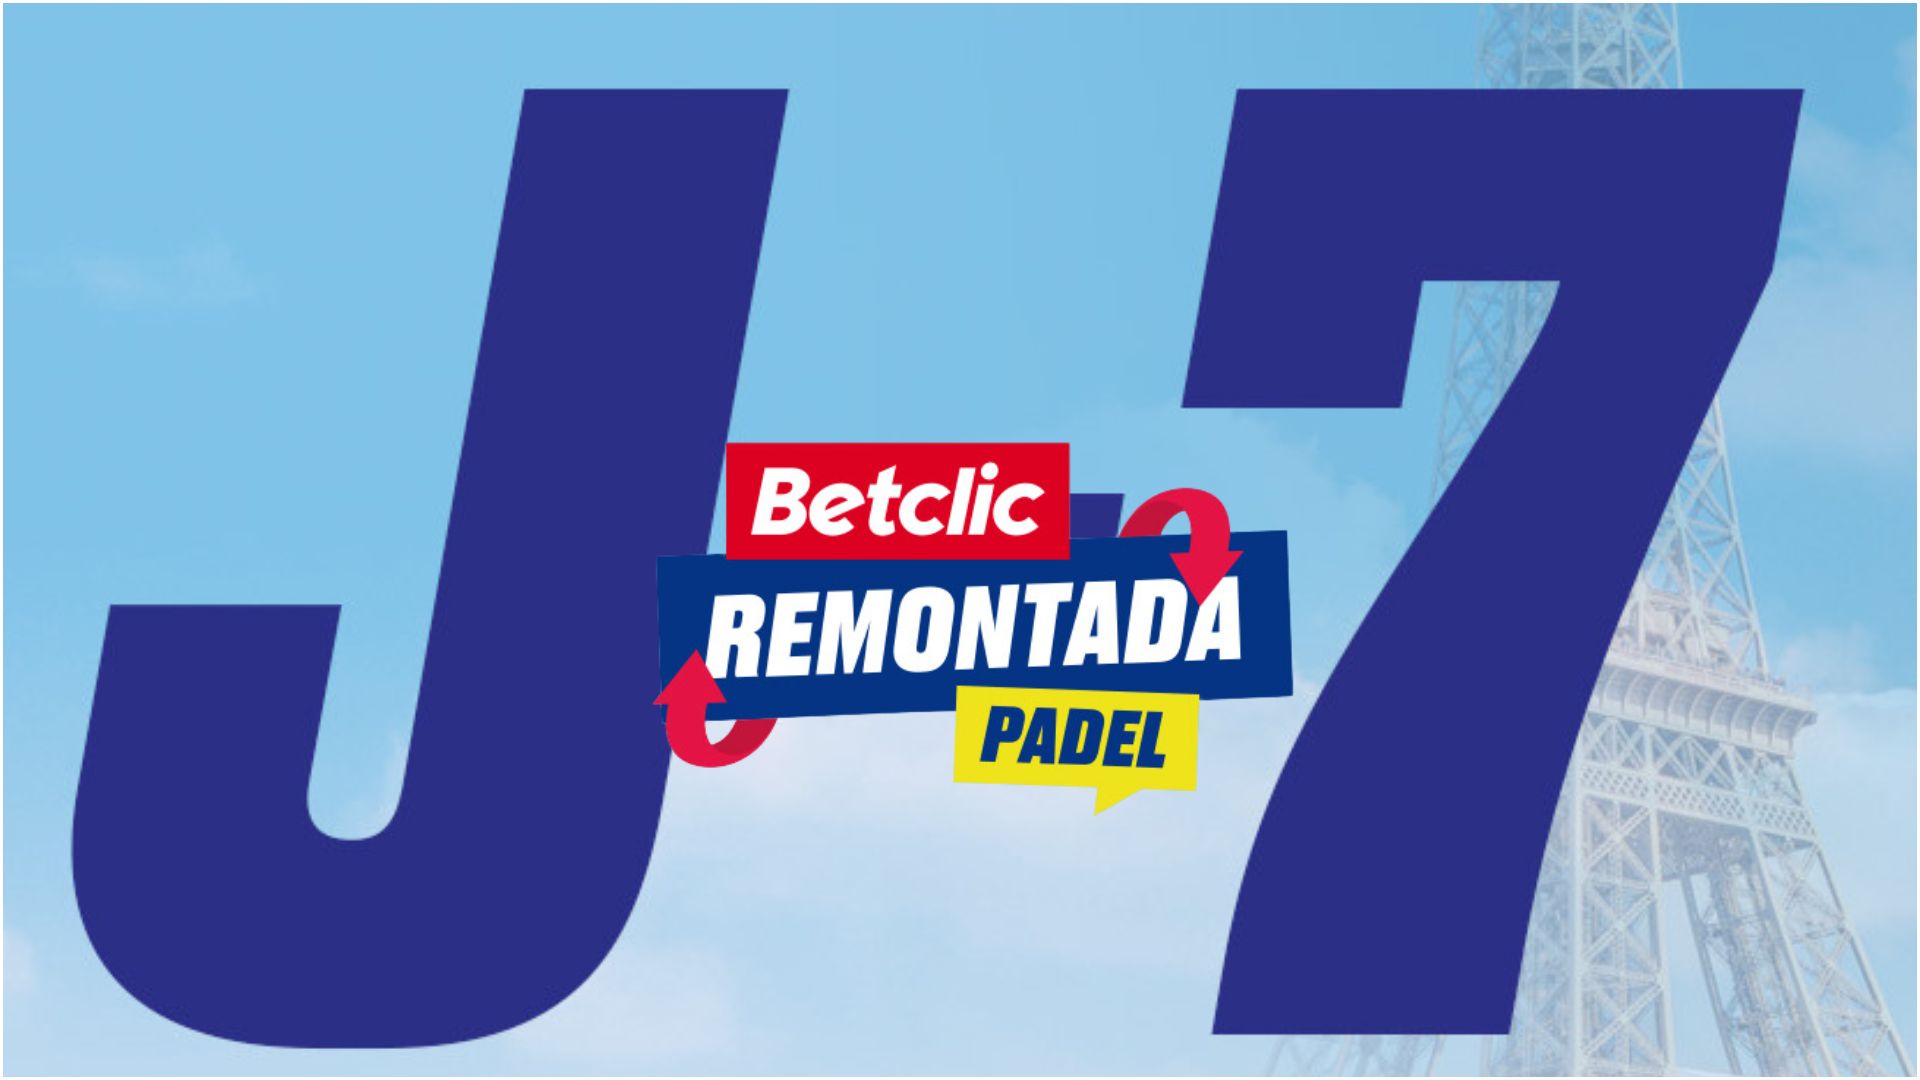 「BetClic Remontada」の D-7 Padelエッフェル塔のふもとにある